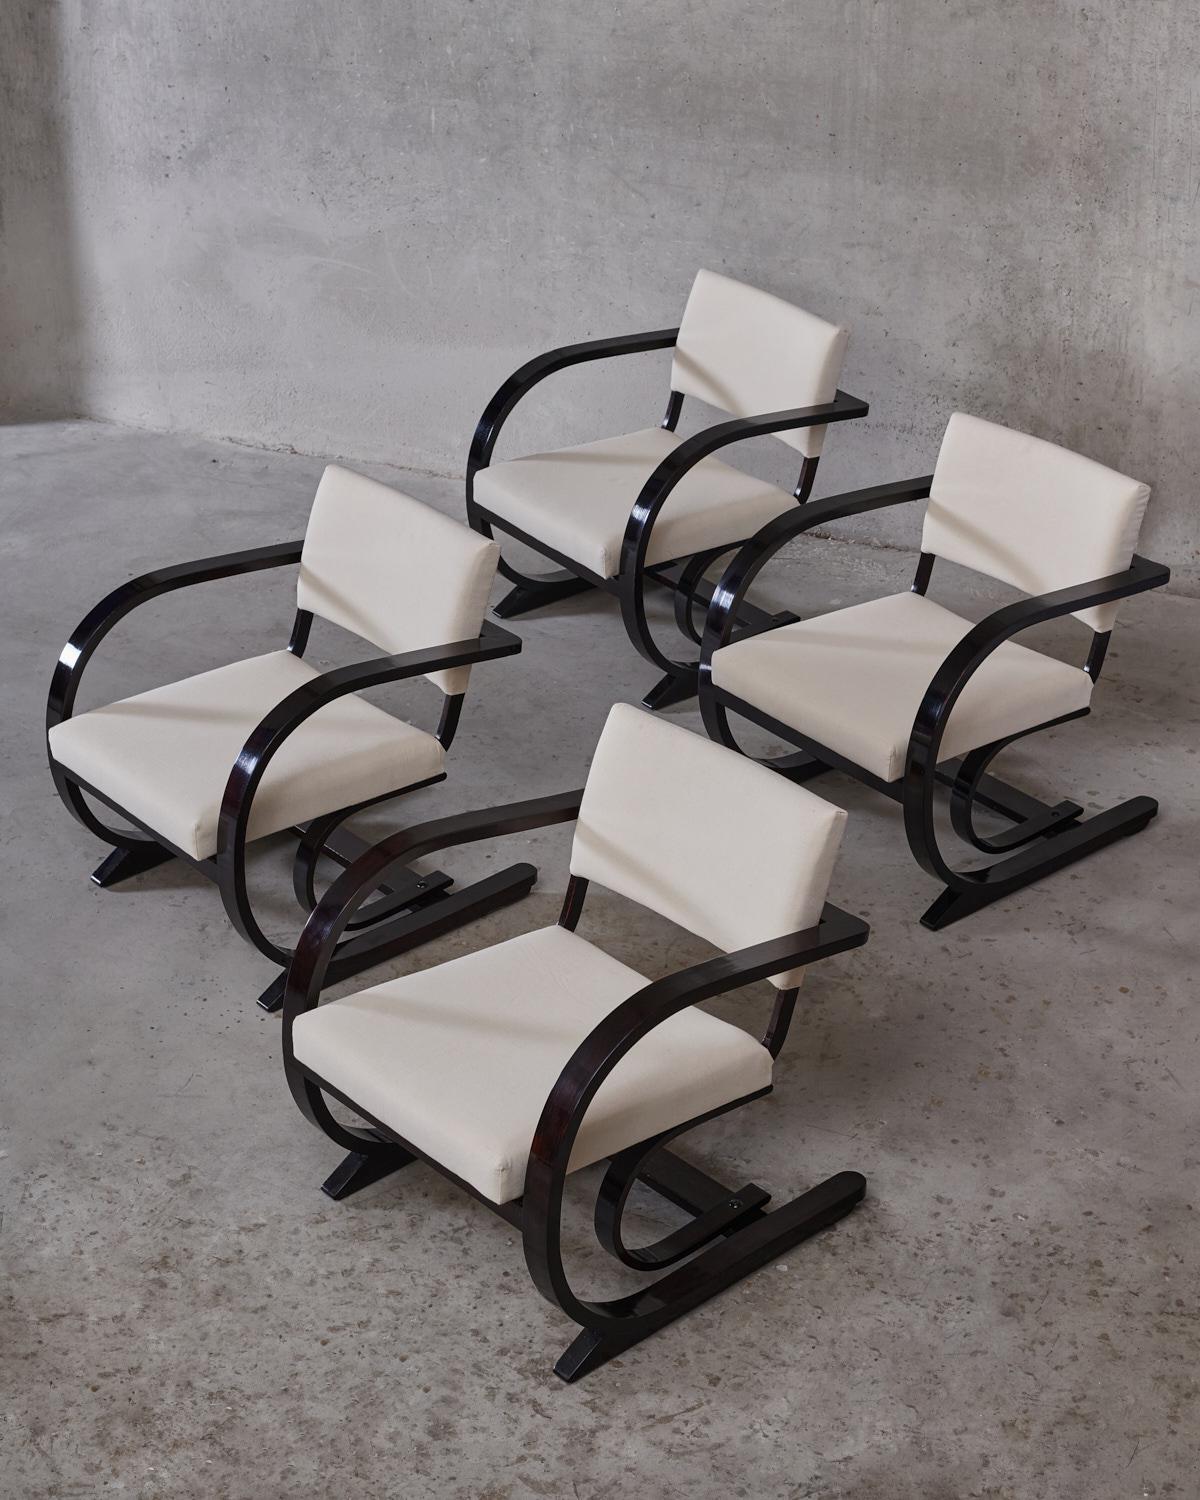 Bas Van Pelt, un ensemble de quatre fauteuils Art Déco / début du milieu du siècle, structure en chêne teinté en bois de rose avec une nouvelle tapisserie, fabriqués aux Pays-Bas vers 1940.
Ce fauteuil a été conçu par Bas Van Pelt et fabriqué aux